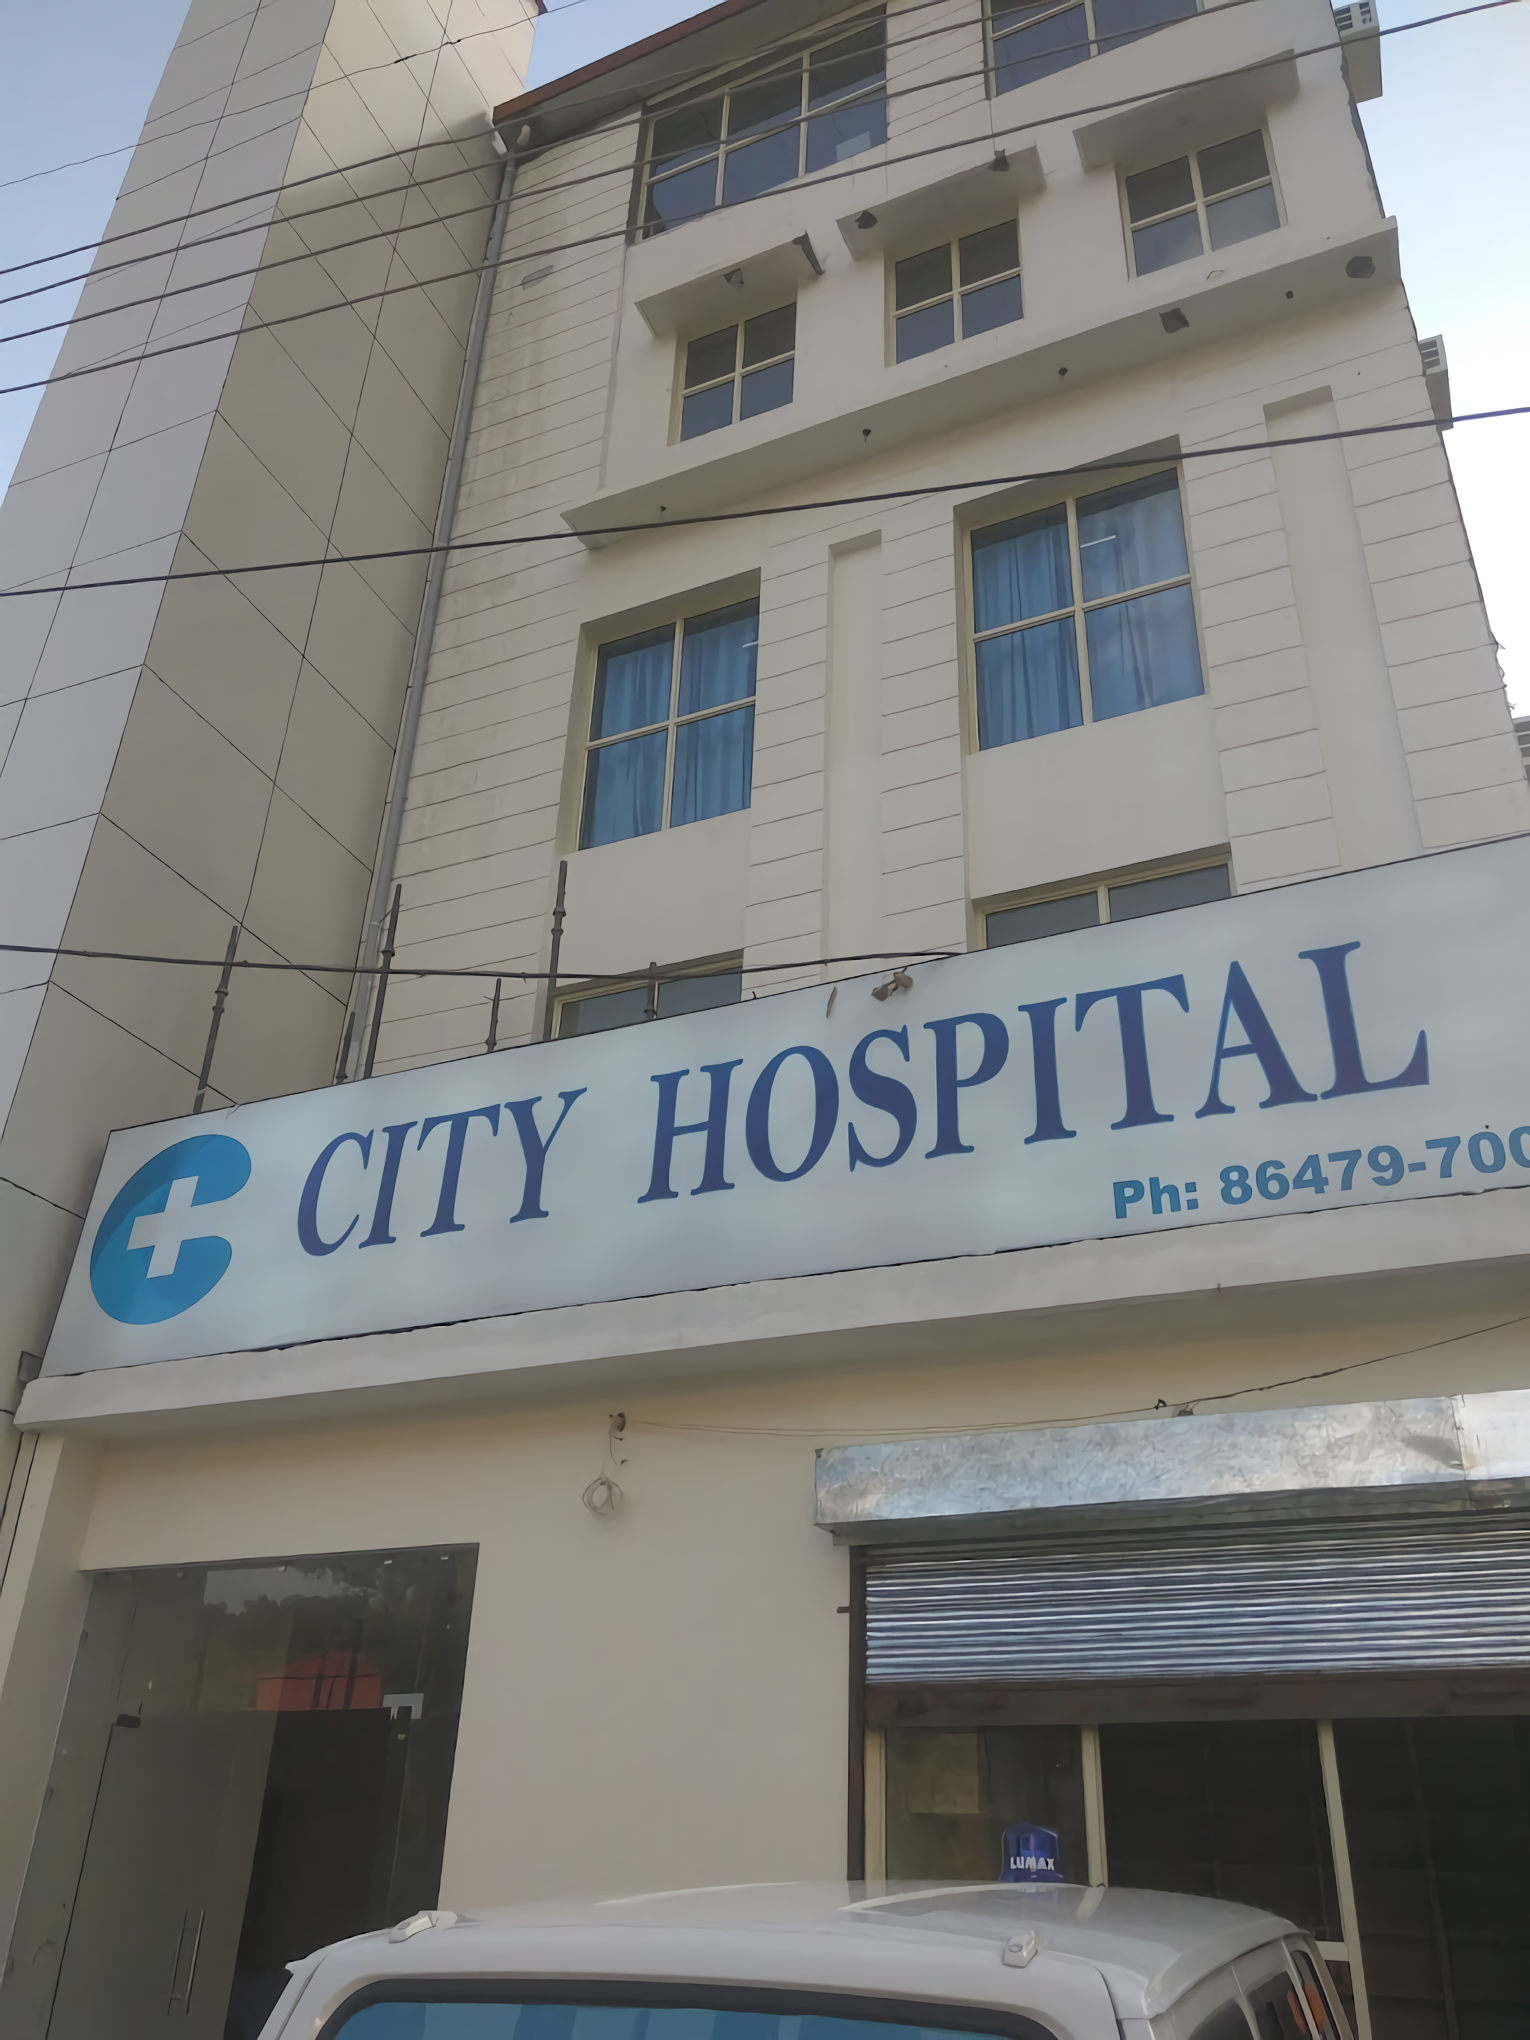 City Hospital - Kangra